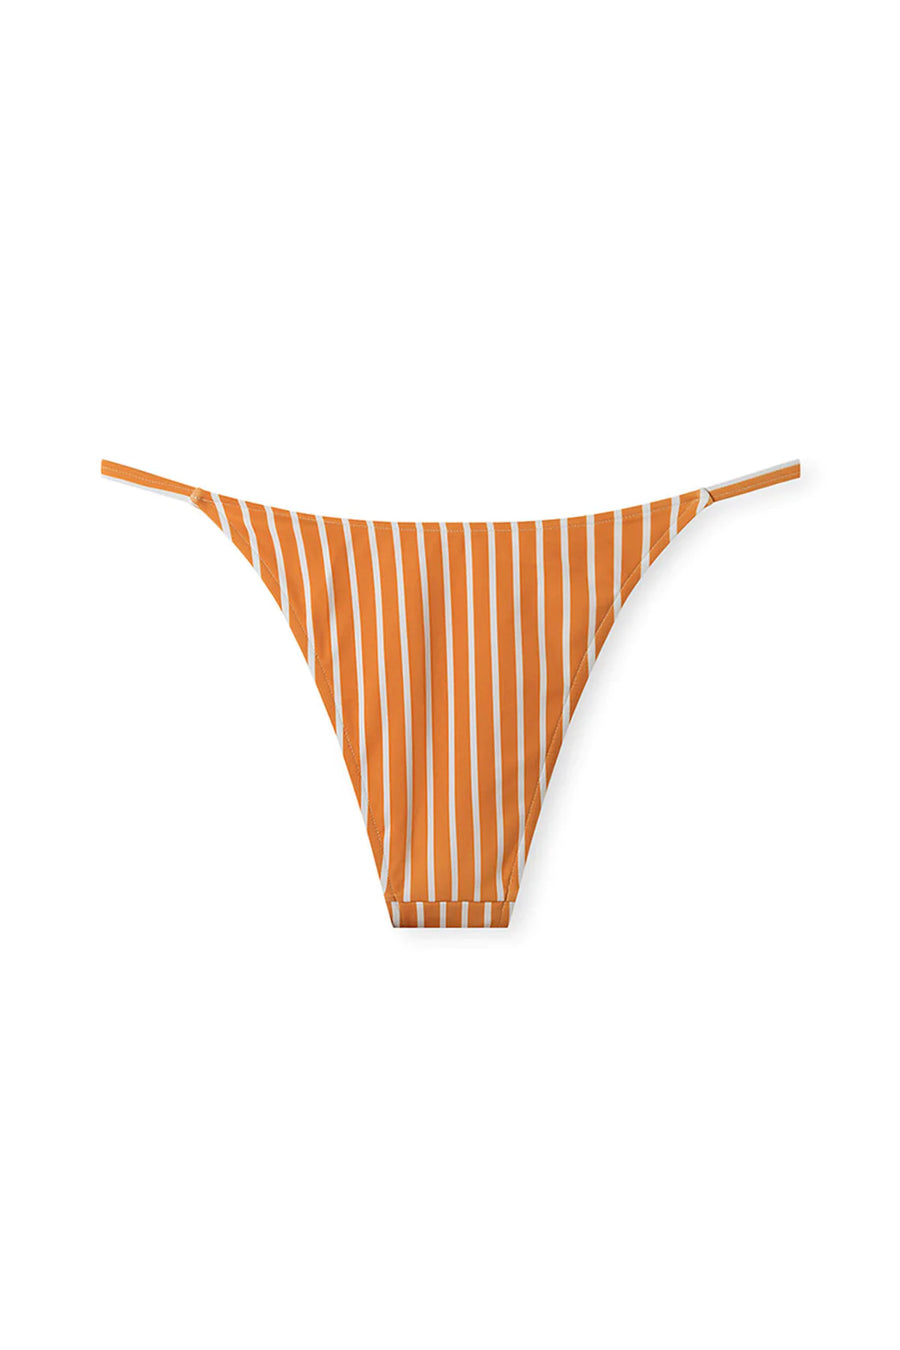 Zulu & Zephyr Tangerine Stripe String Curve Brief